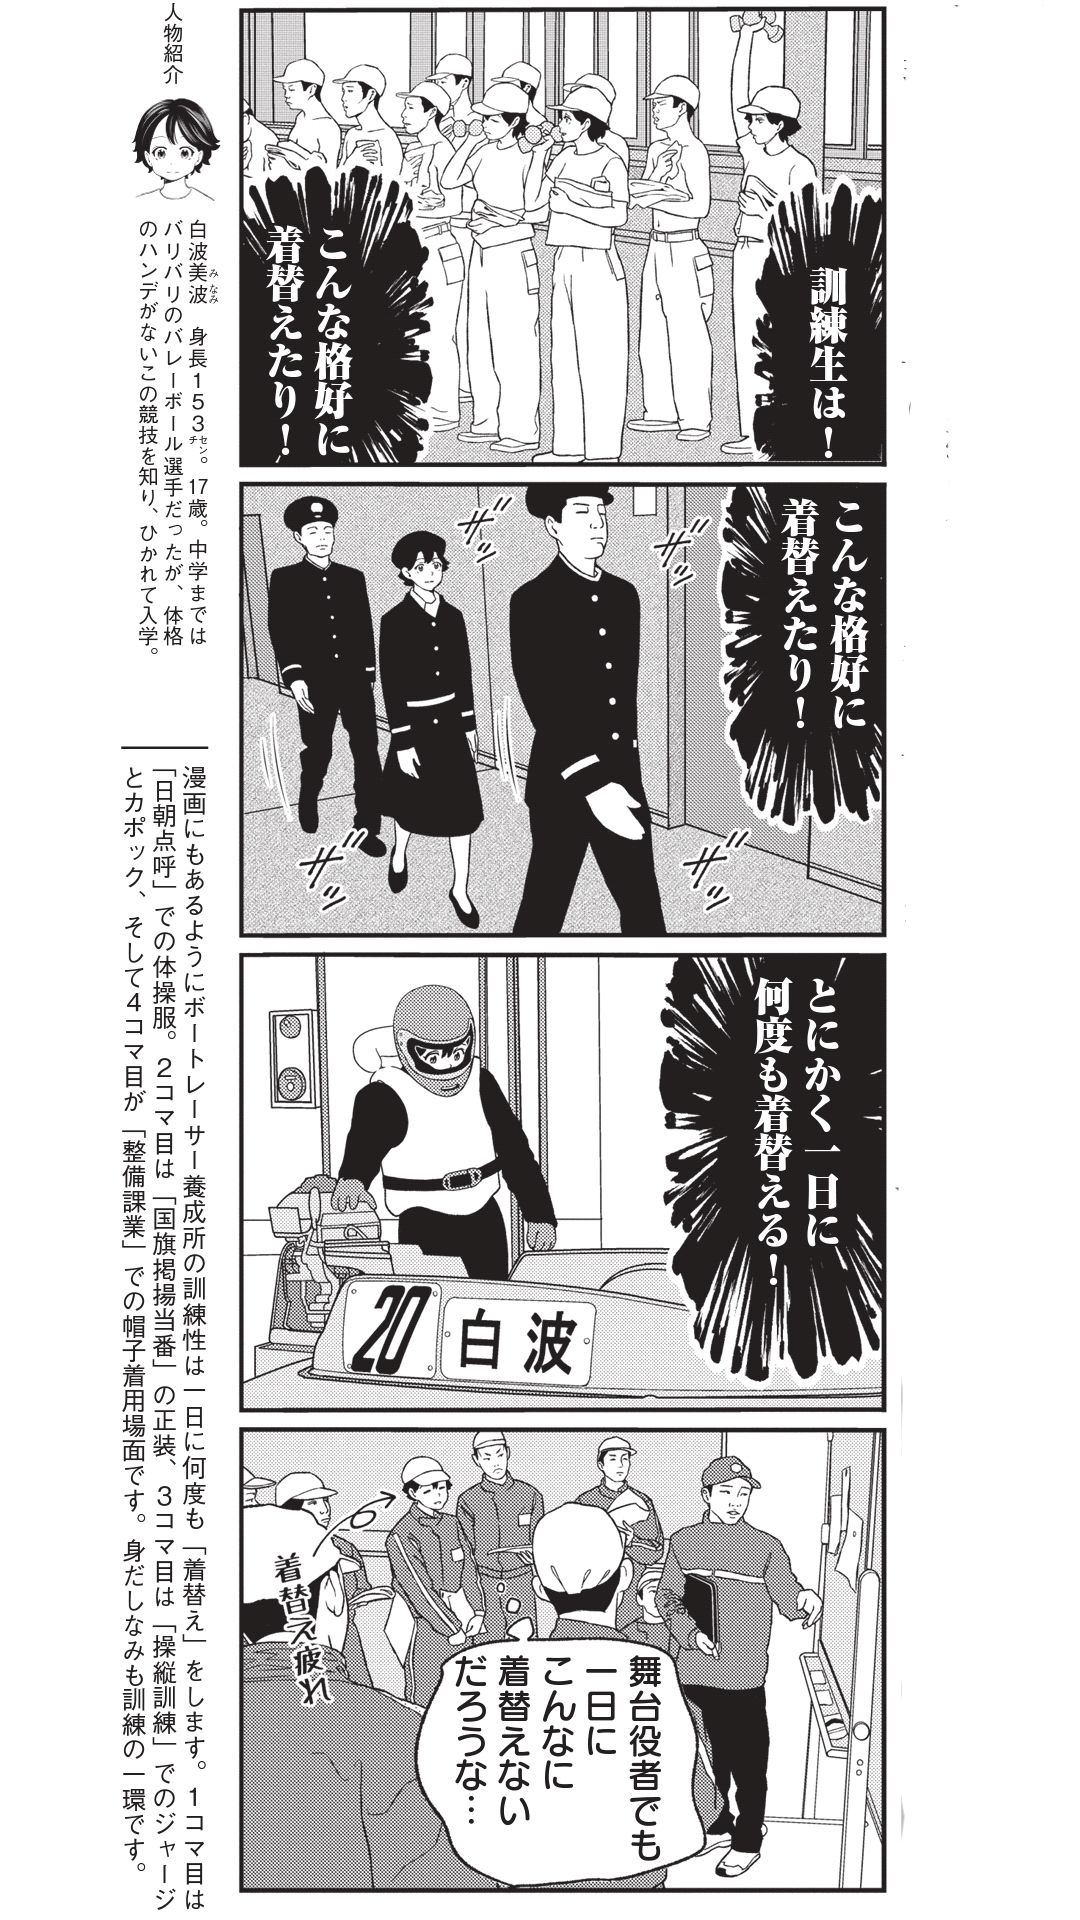 4コマ漫画『ボートレース訓練生・美波』こぼれ話「舞台役者でもこんなに着替えない…」の画像